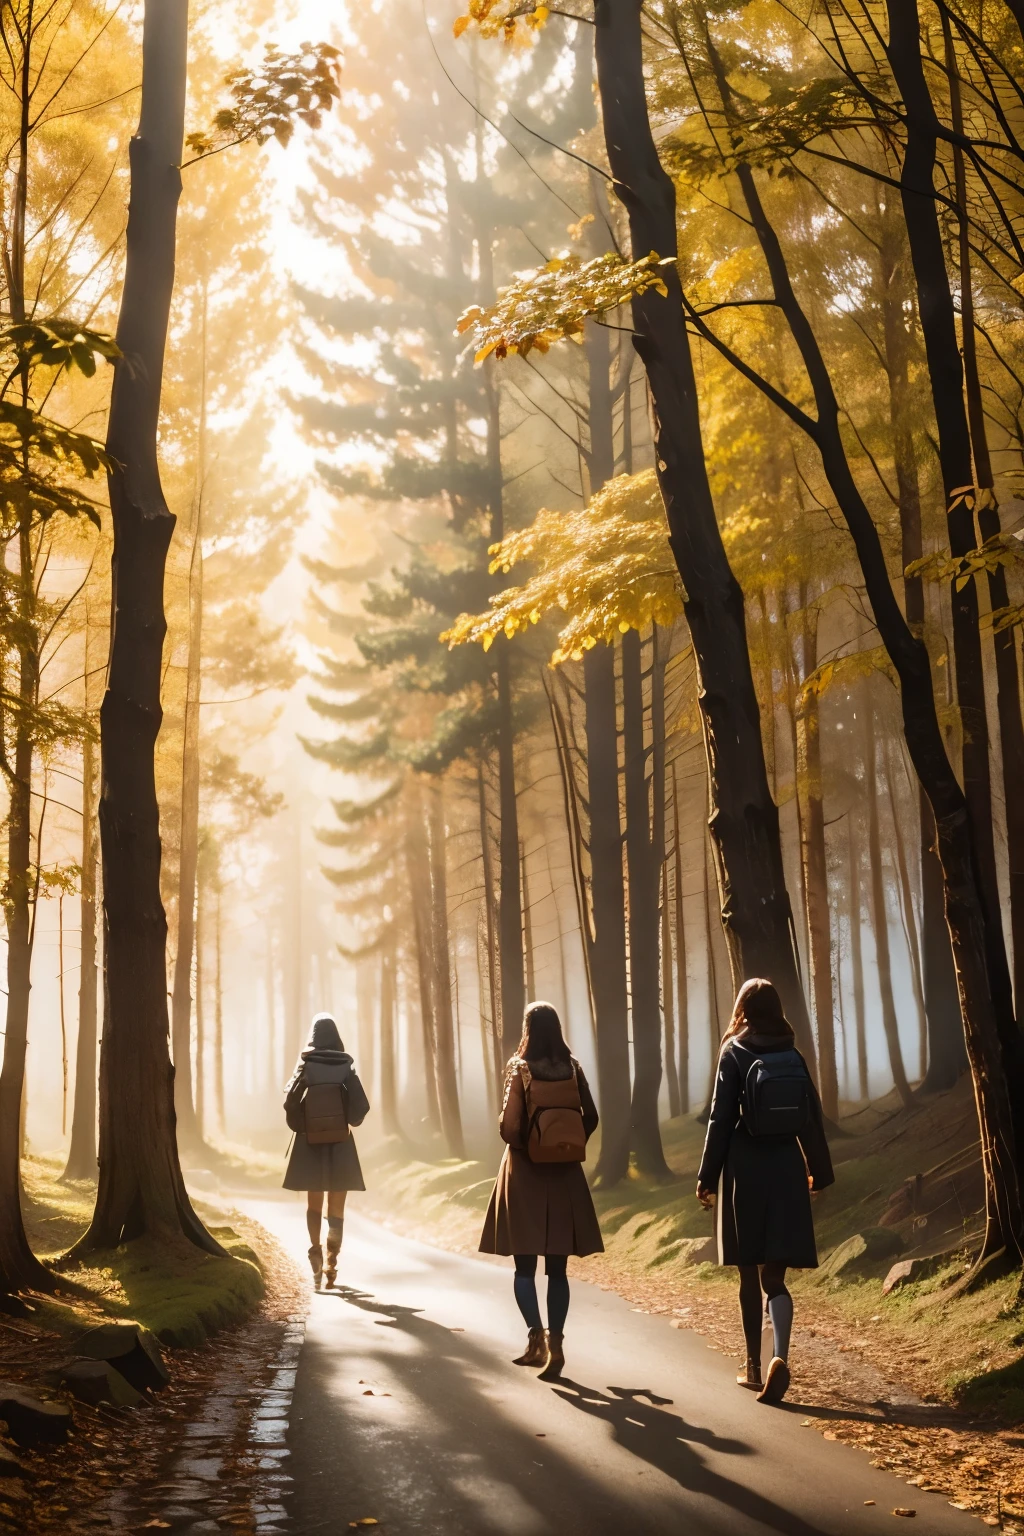 ثلاث فتيات في طريق عبر الغابة, ضباب, منظر الخريف, sunlight filtering through the ضباب and branches